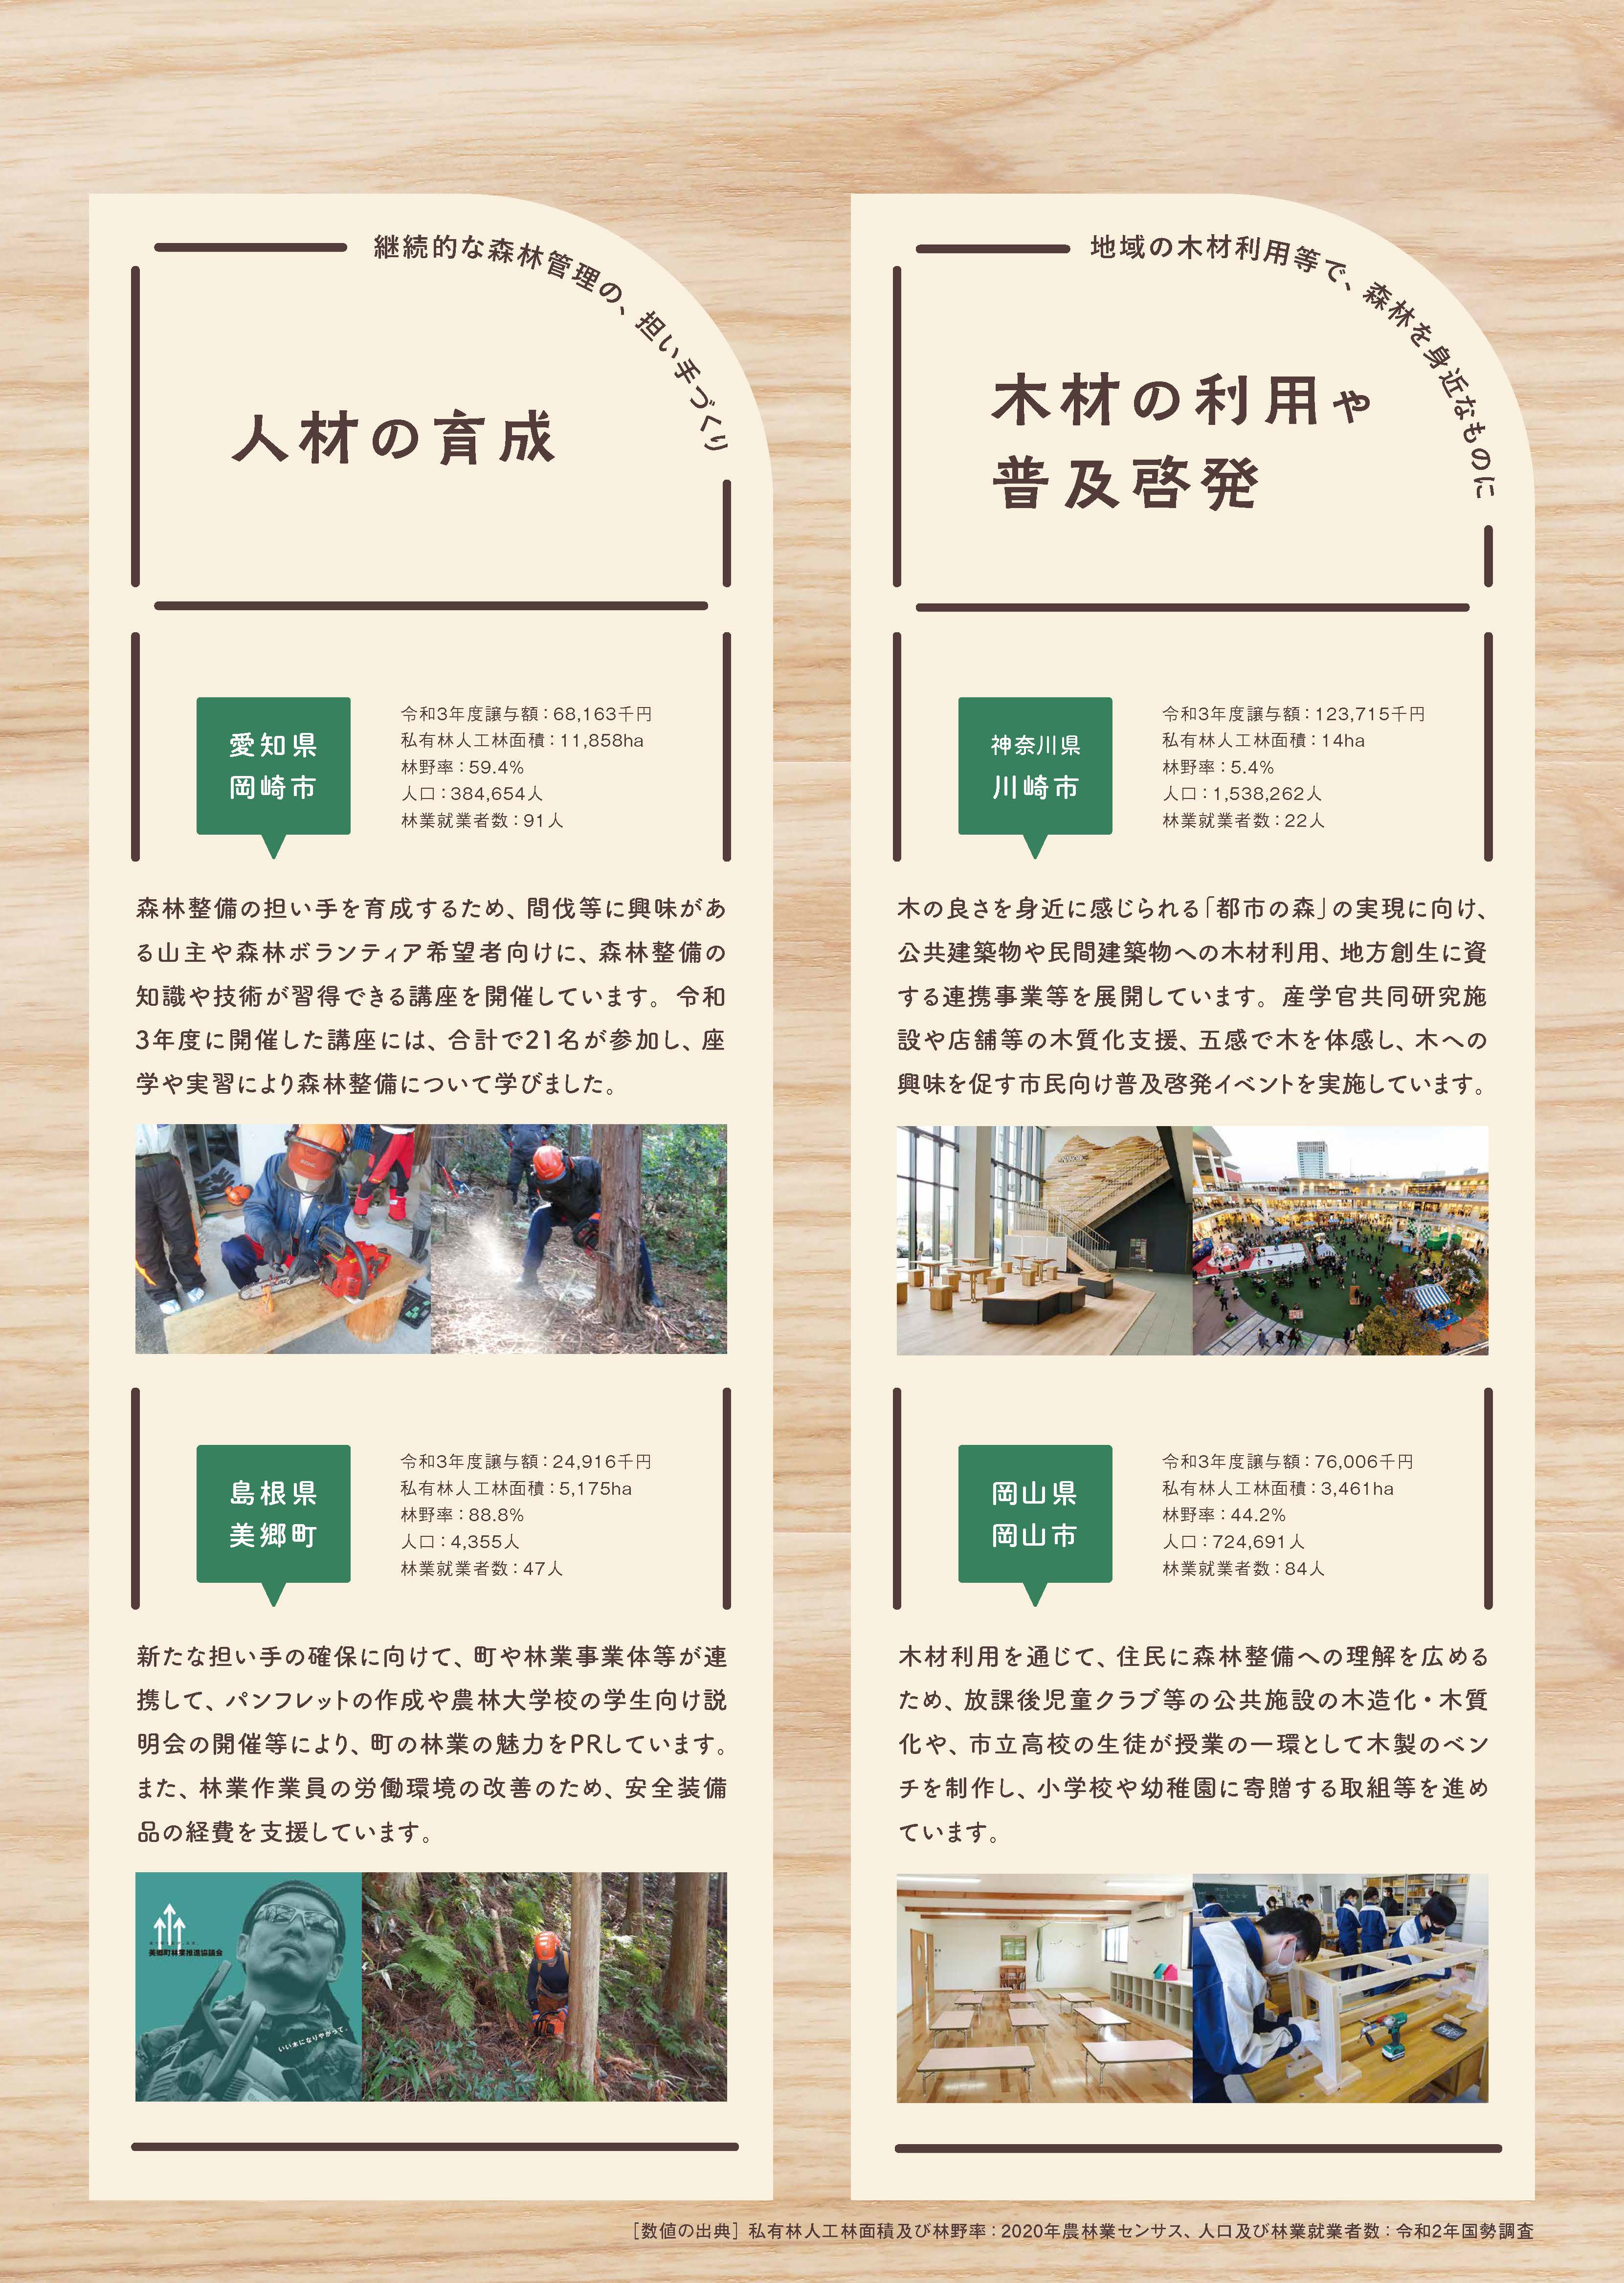 森林環境譲与税を活用した地方自治体の取組の紹介 Vol.1 鳥取県八頭町